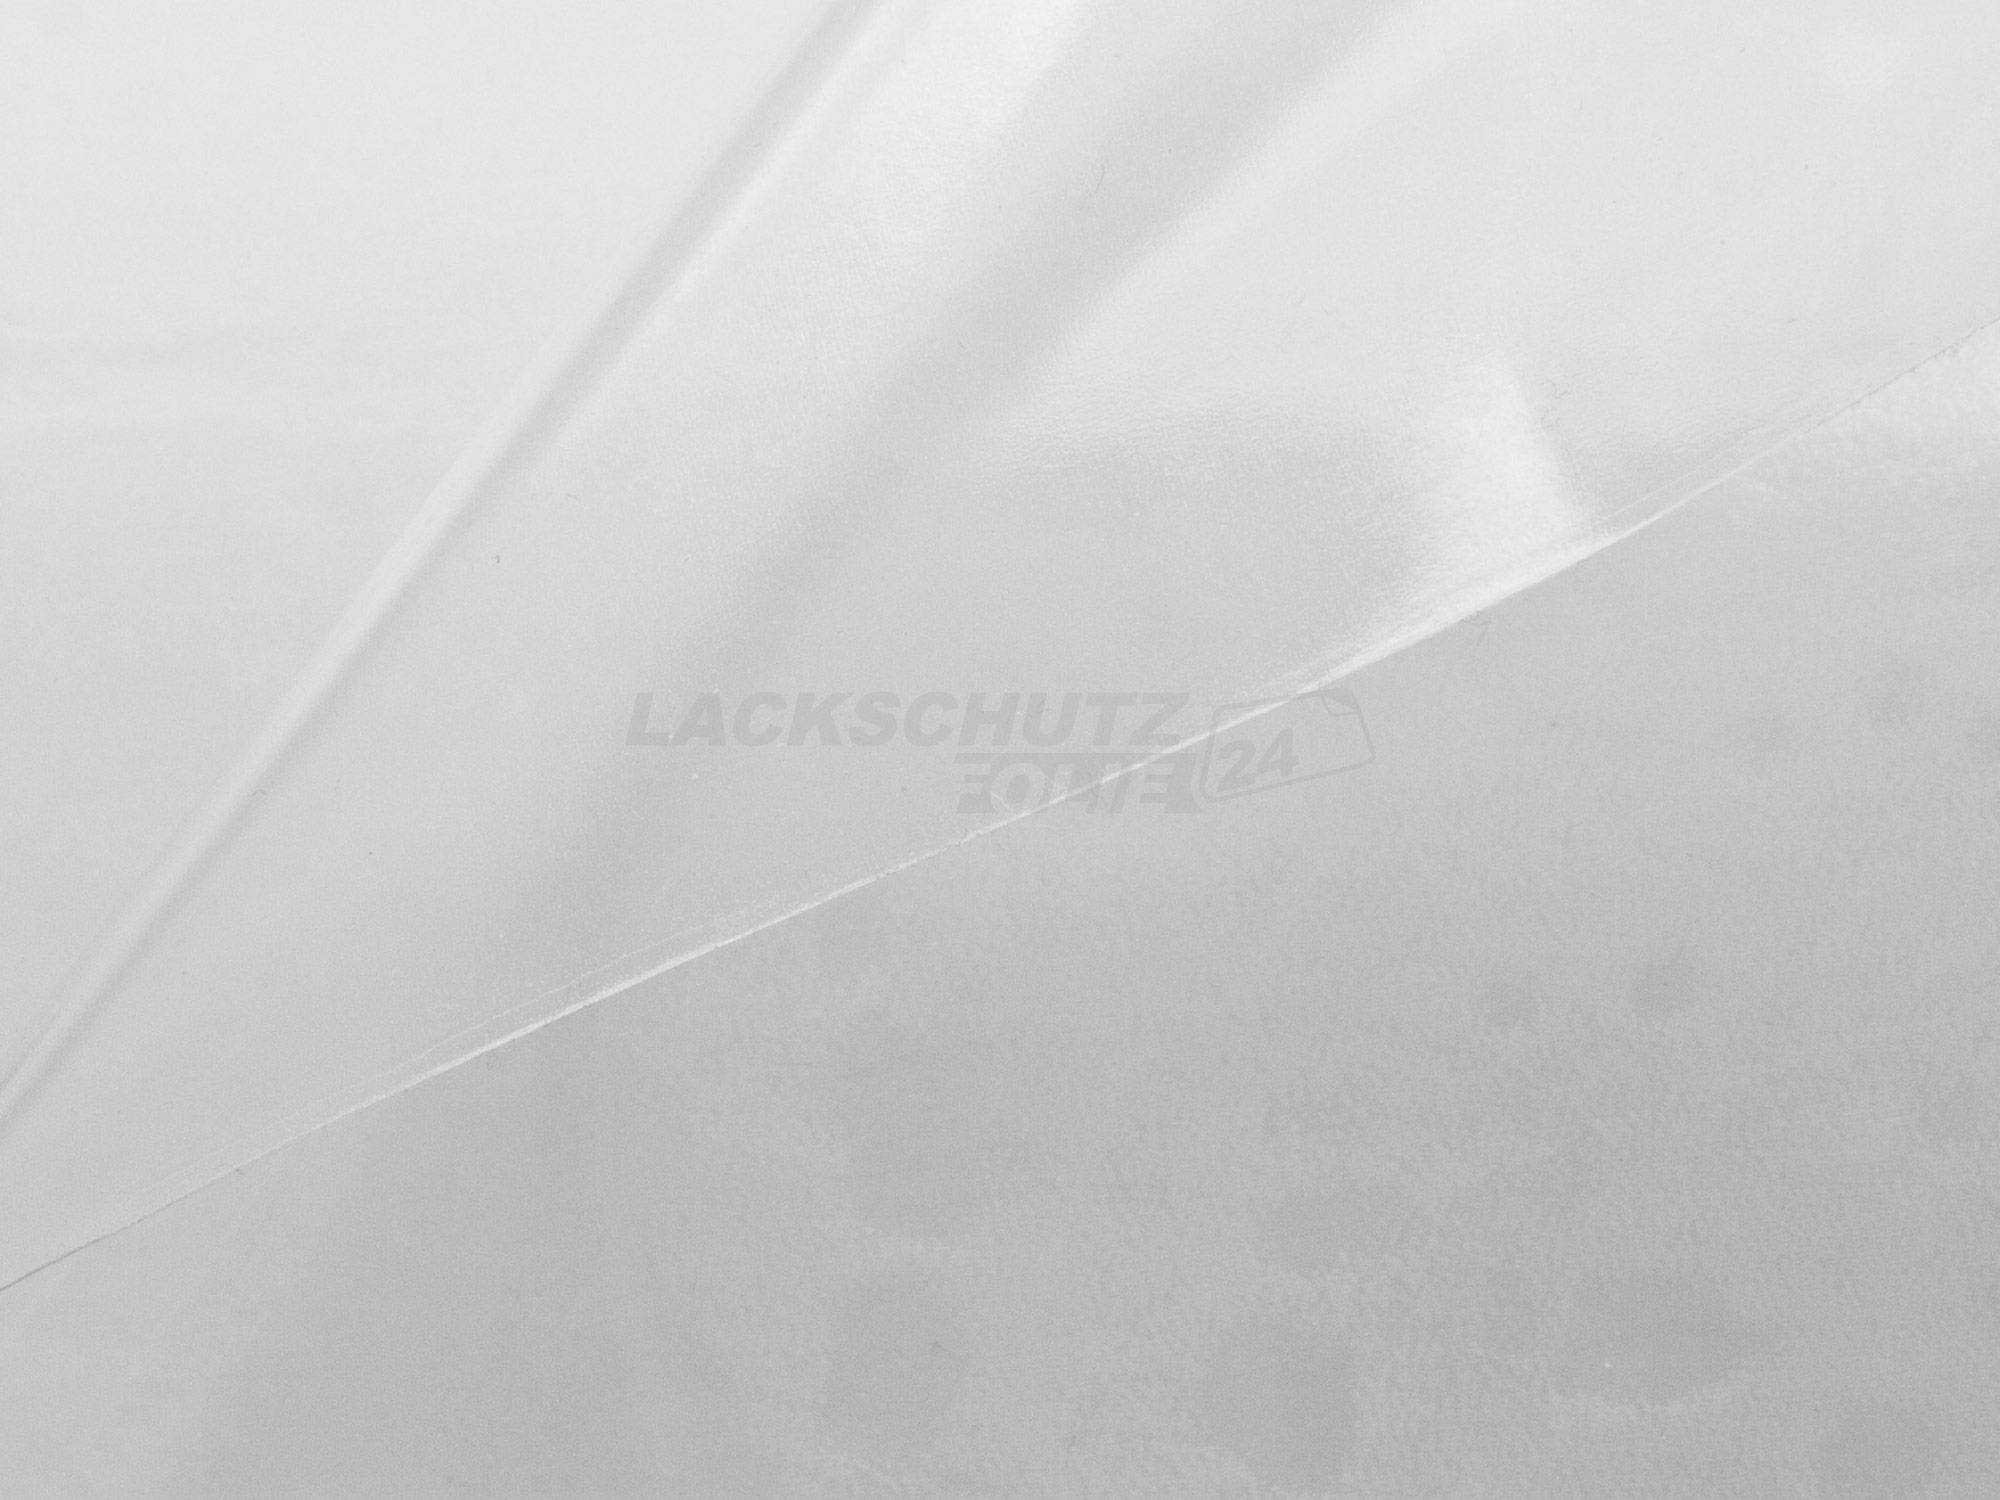 Ladekantenschutzfolie - Transparent Glatt Hochglänzend 150 µm stark für BMW X3 Typ F25, BJ 11/2010-11/2017